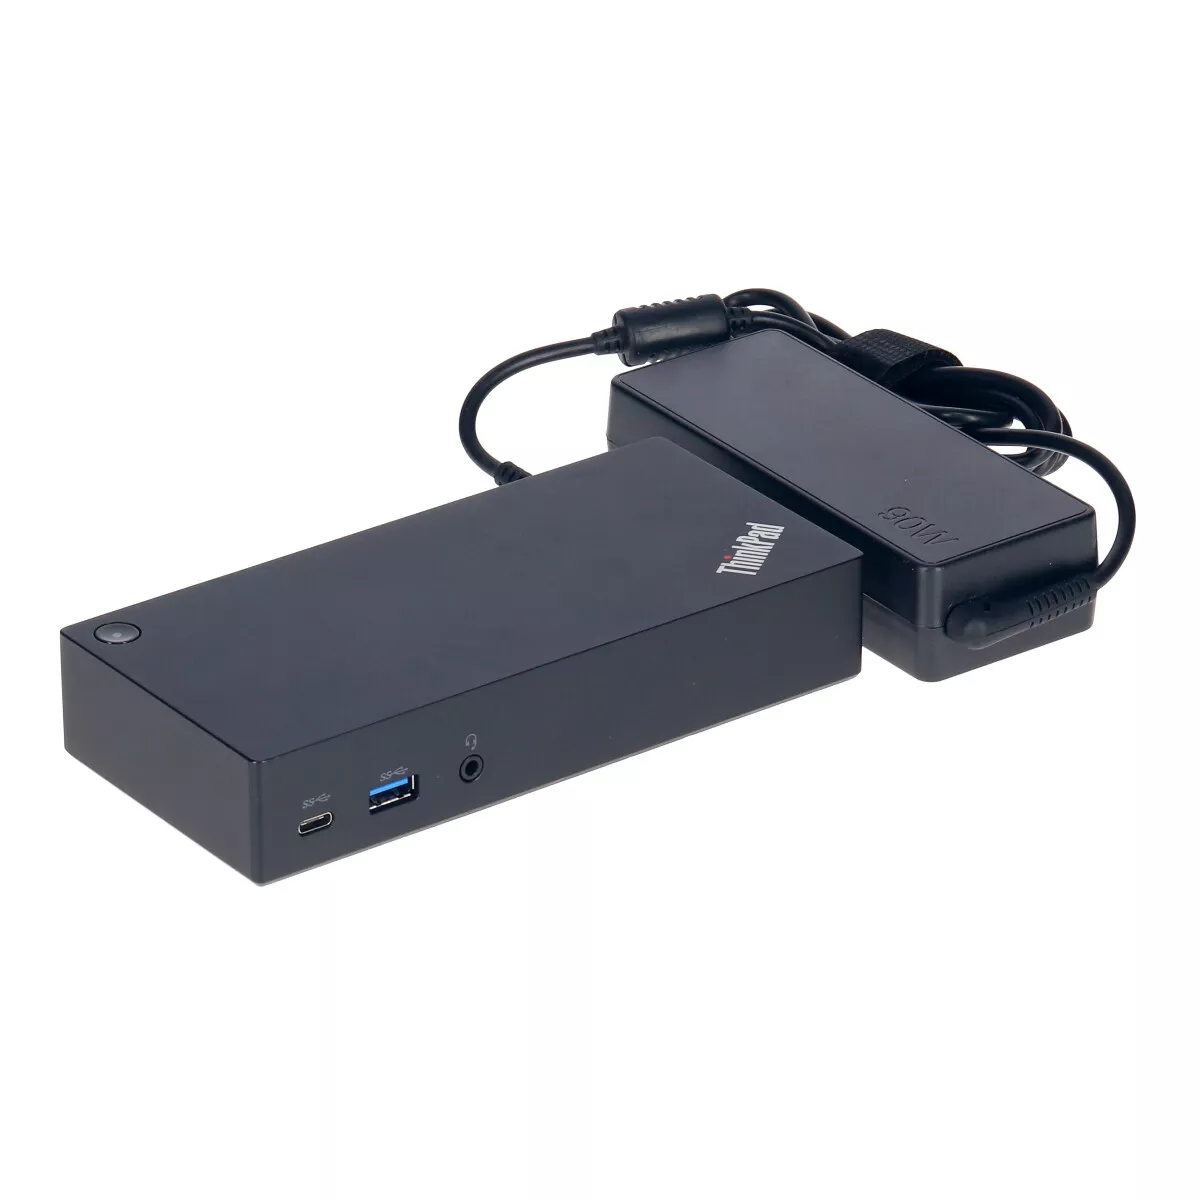 Lenovo Thinkpad USB-C Dockingstation 40A9 mit Netzteil und USB-C Verbindungskabel